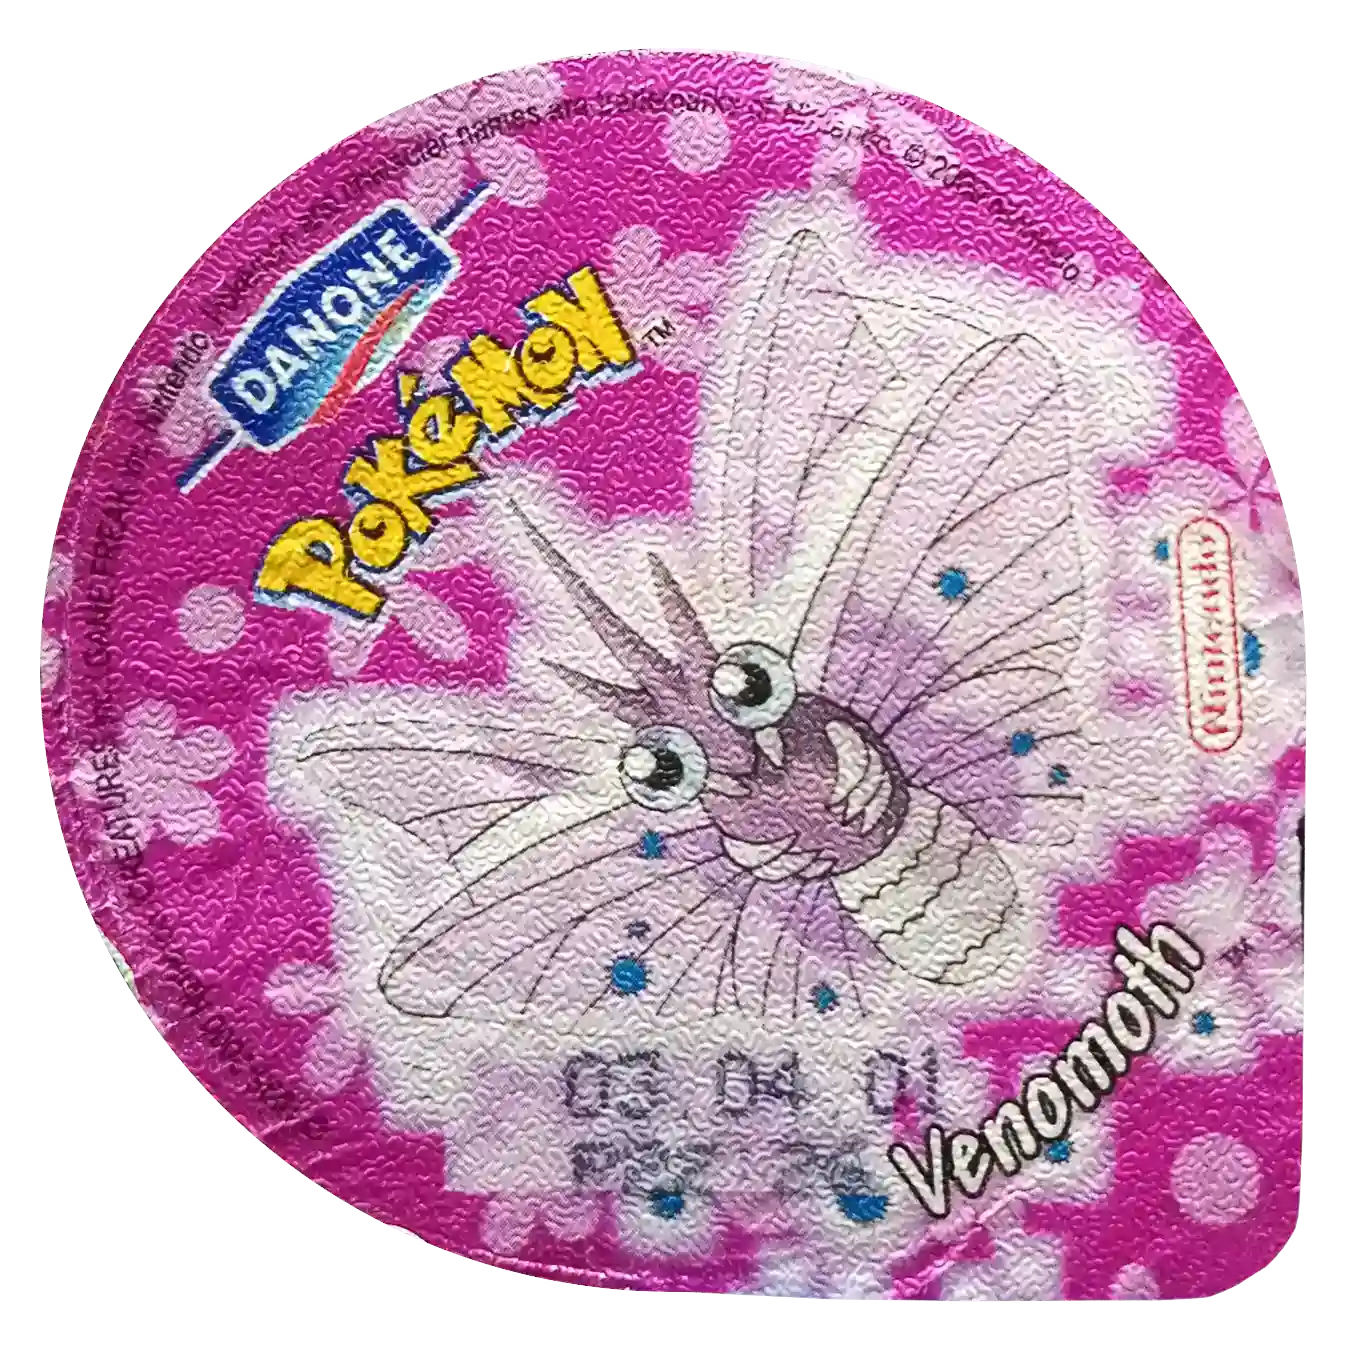 wieczka pokemon danone venomoth używa skrzydeł do ataku największy zbiór kolekcji pokemon tazo